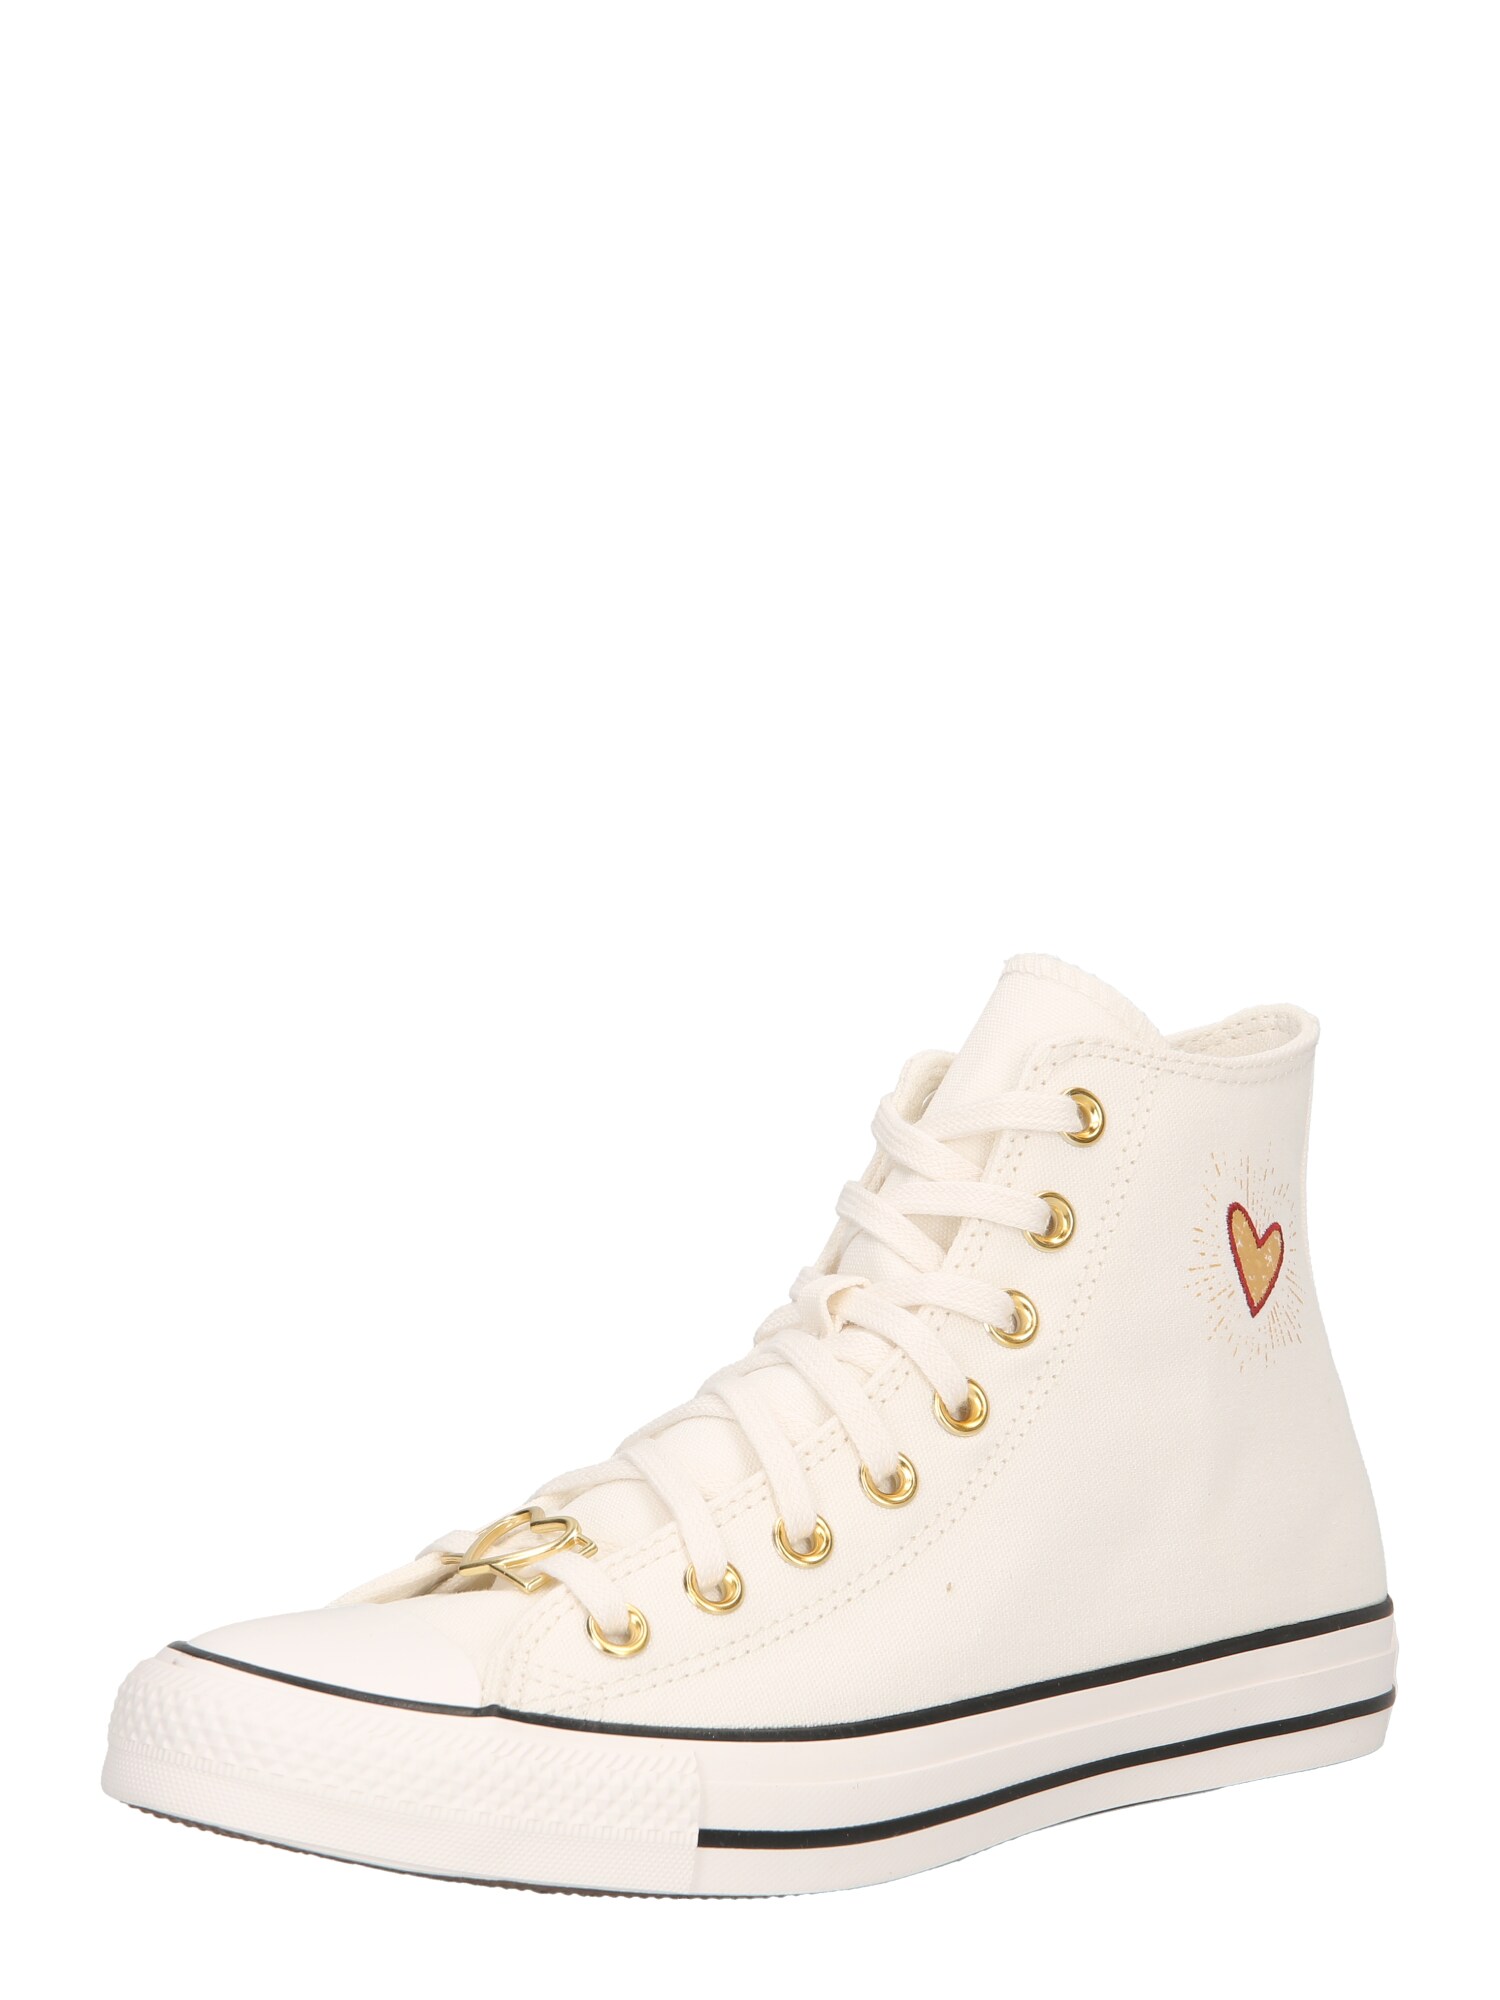 Converse CONVERSE Sneaker 'Chuck Taylor All Star' hellbraun / rot / weiß